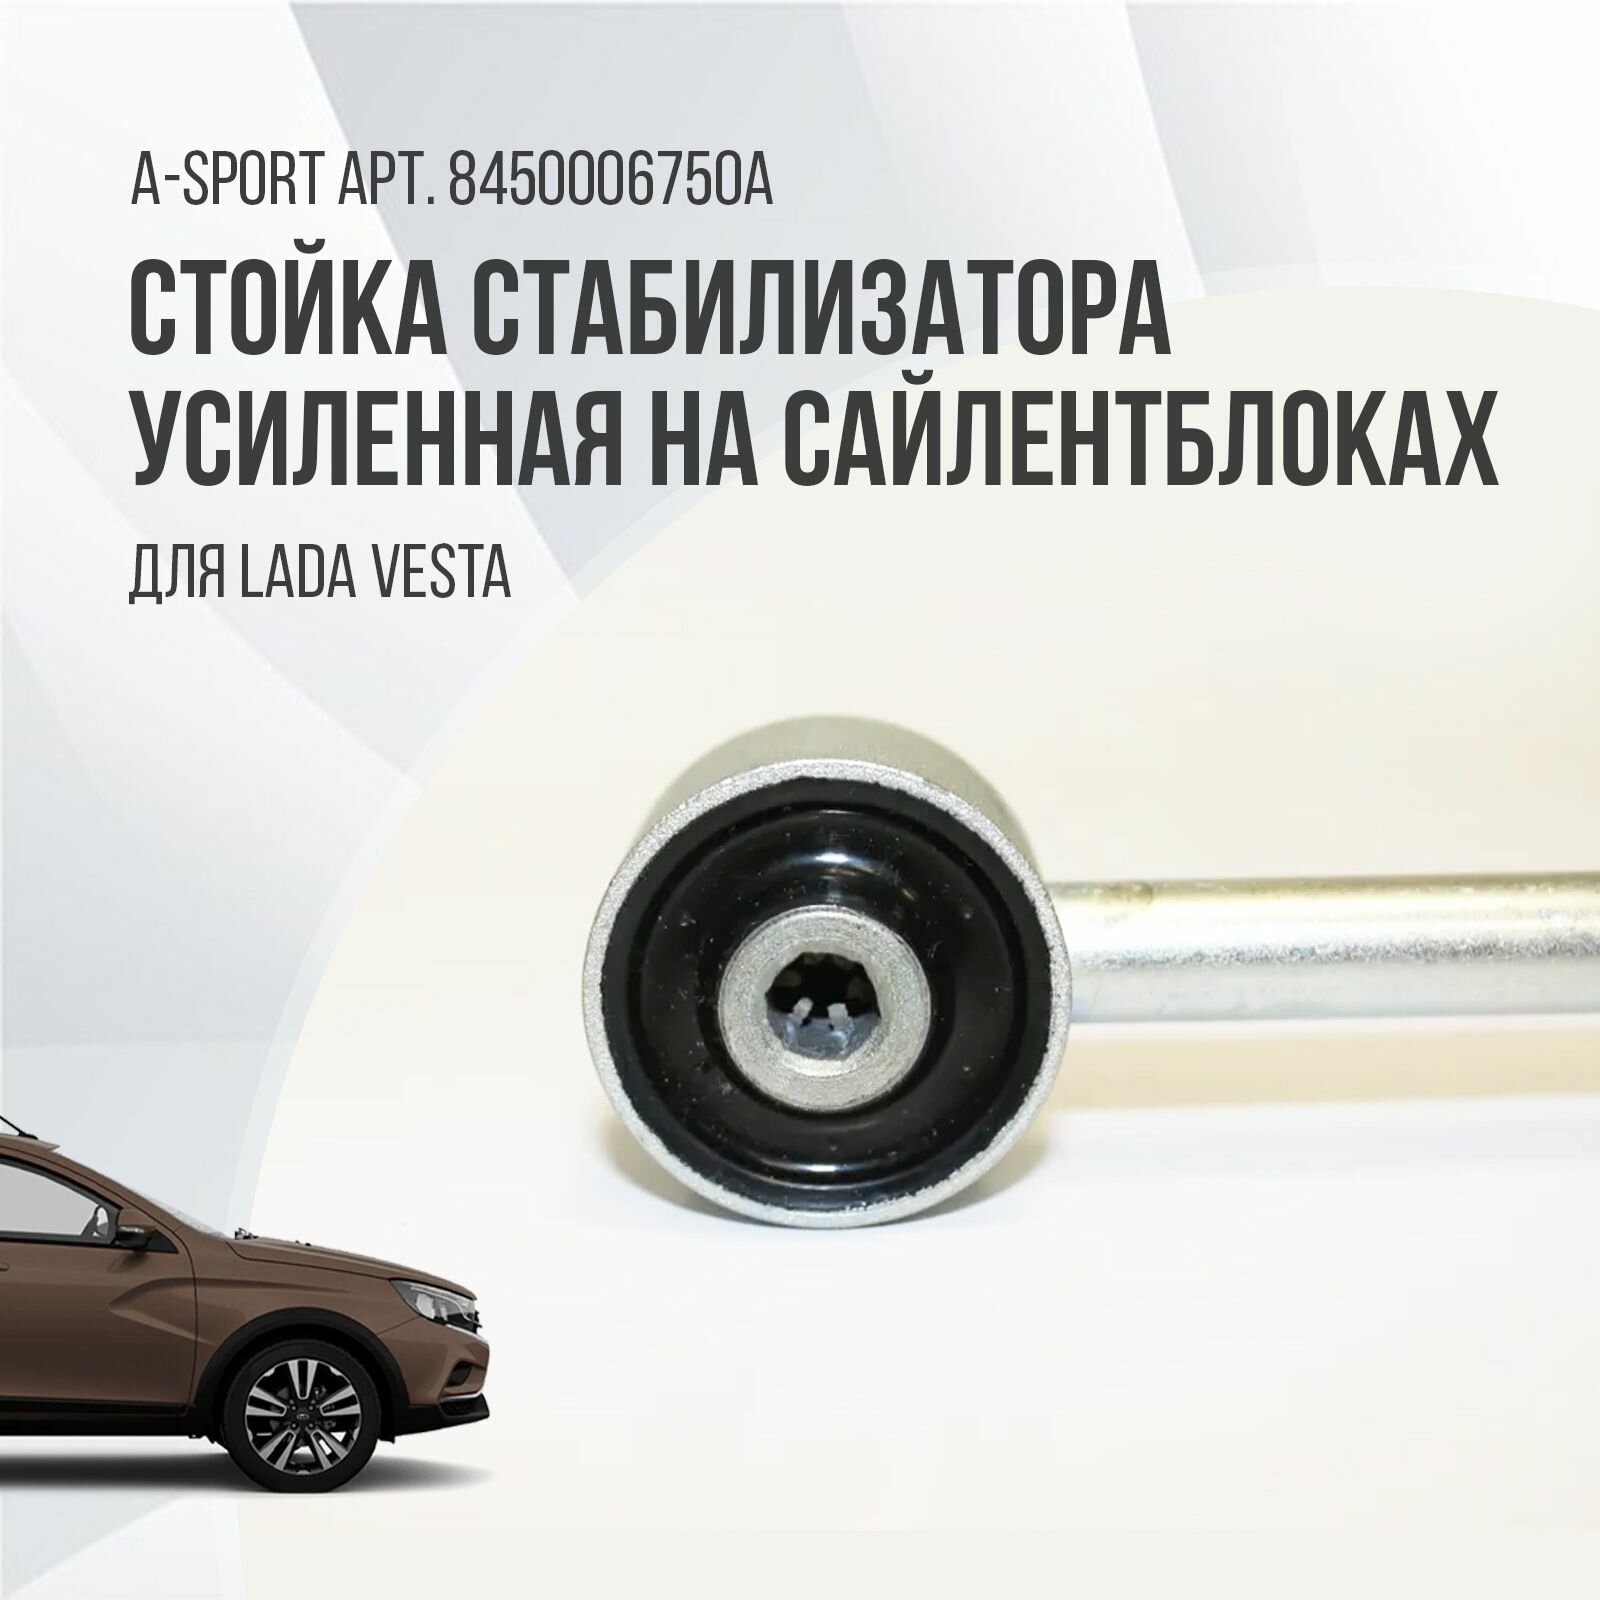 Стойка стабилизатора усиленная на сайлентблоках A-sport для Lada Vesta